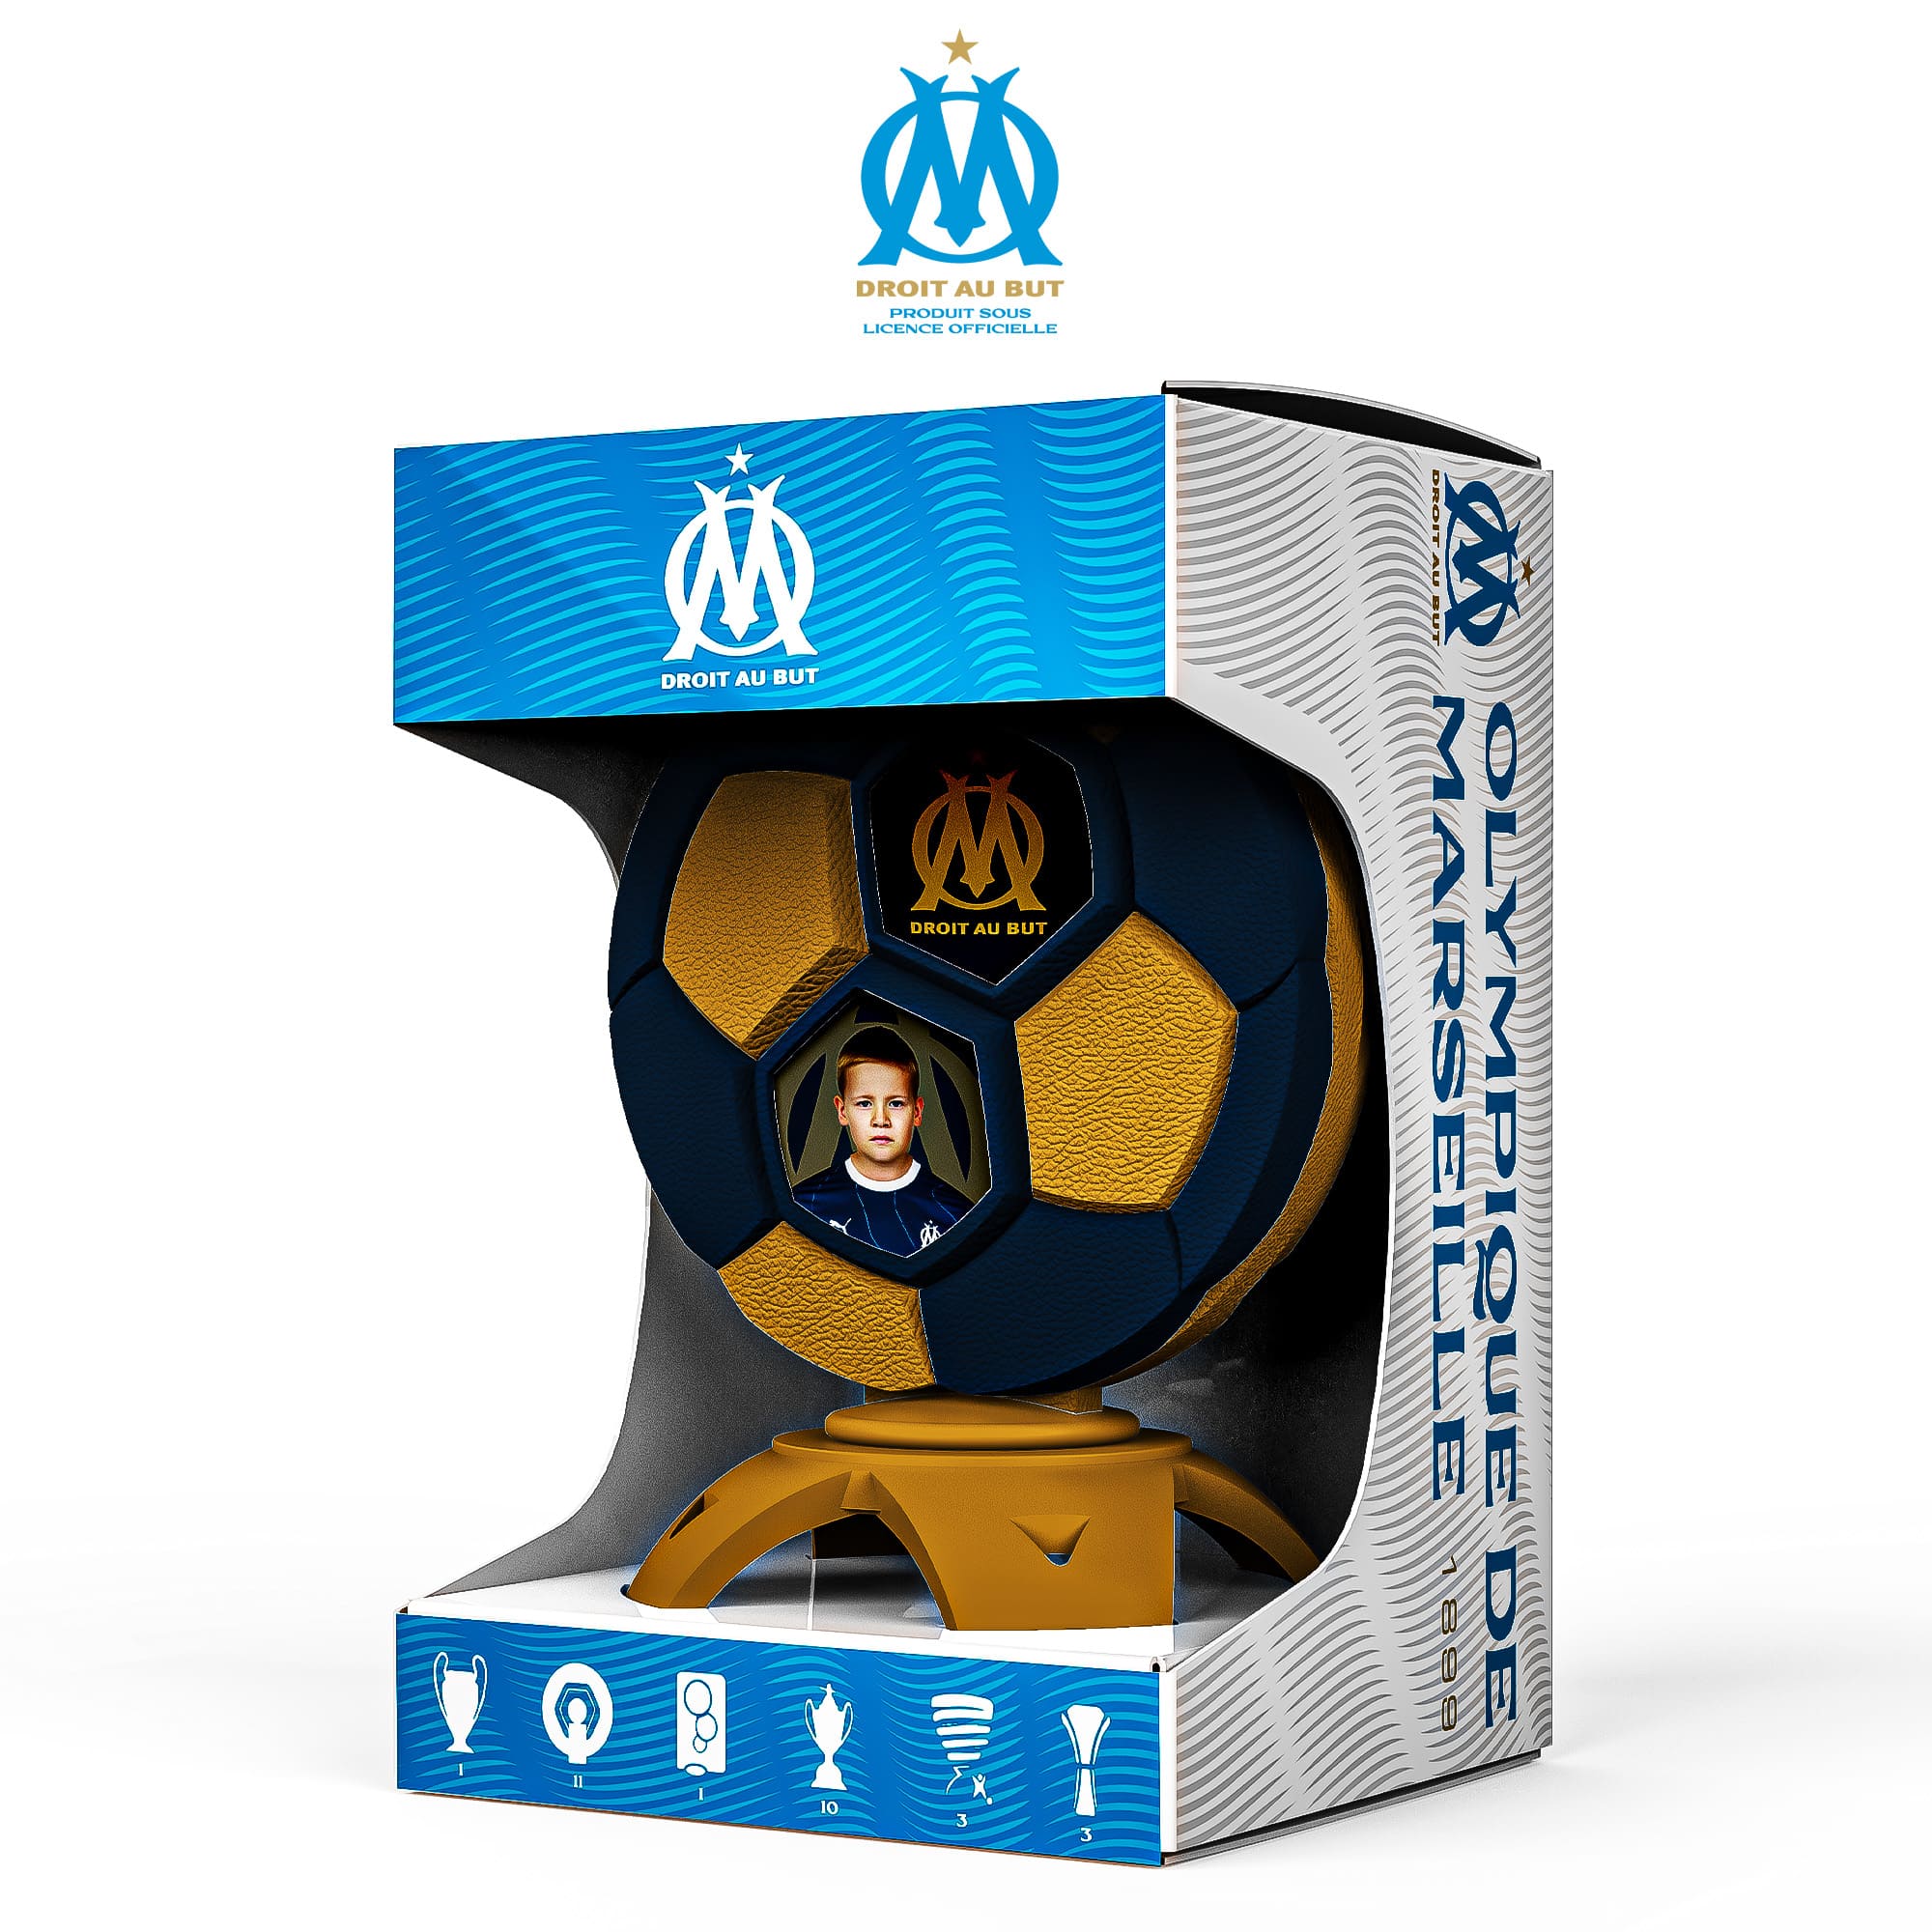 Créez votre trophée sous licence officielle Olympique de Marseille